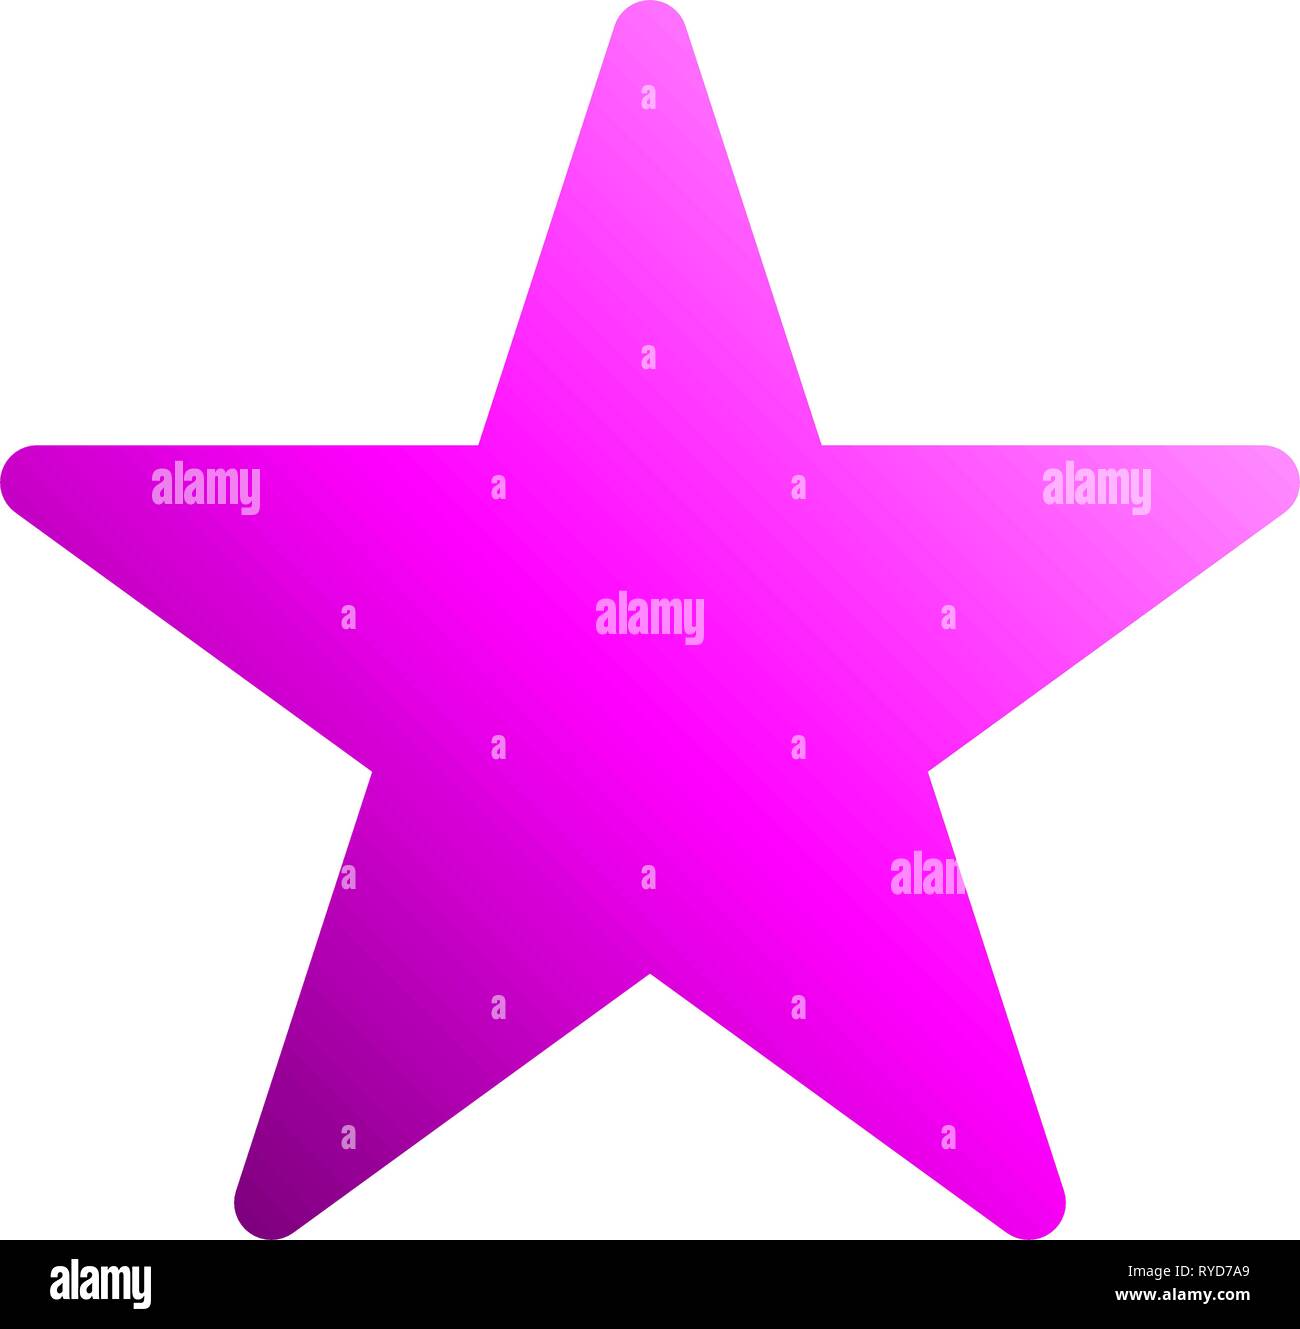 Stella simbolo icona - gradiente viola, 5 punte arrotondate, isolato - illustrazione vettoriale Illustrazione Vettoriale